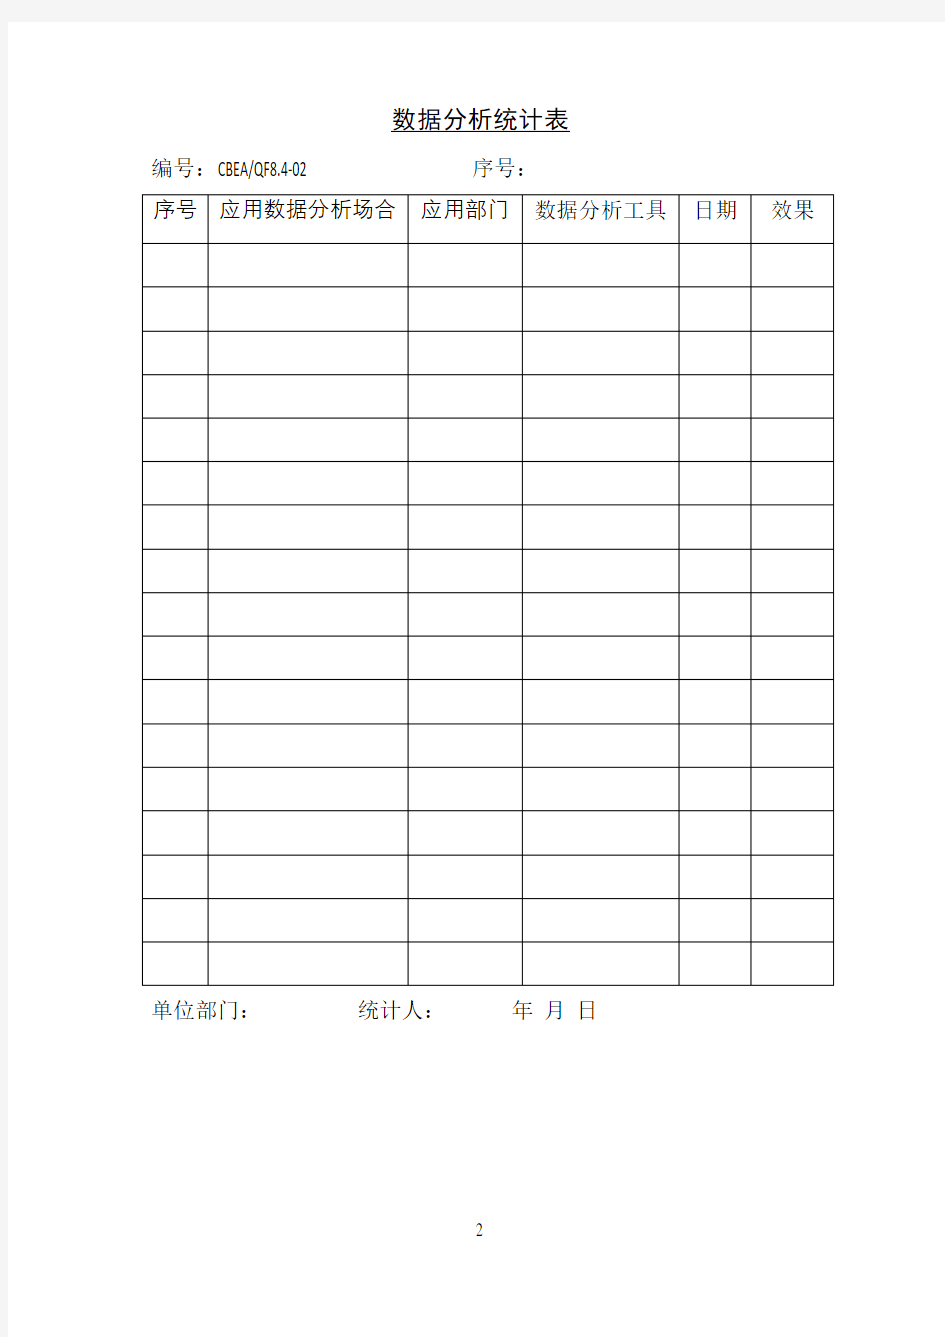 数据分析统计表(表格模板、DOC格式)